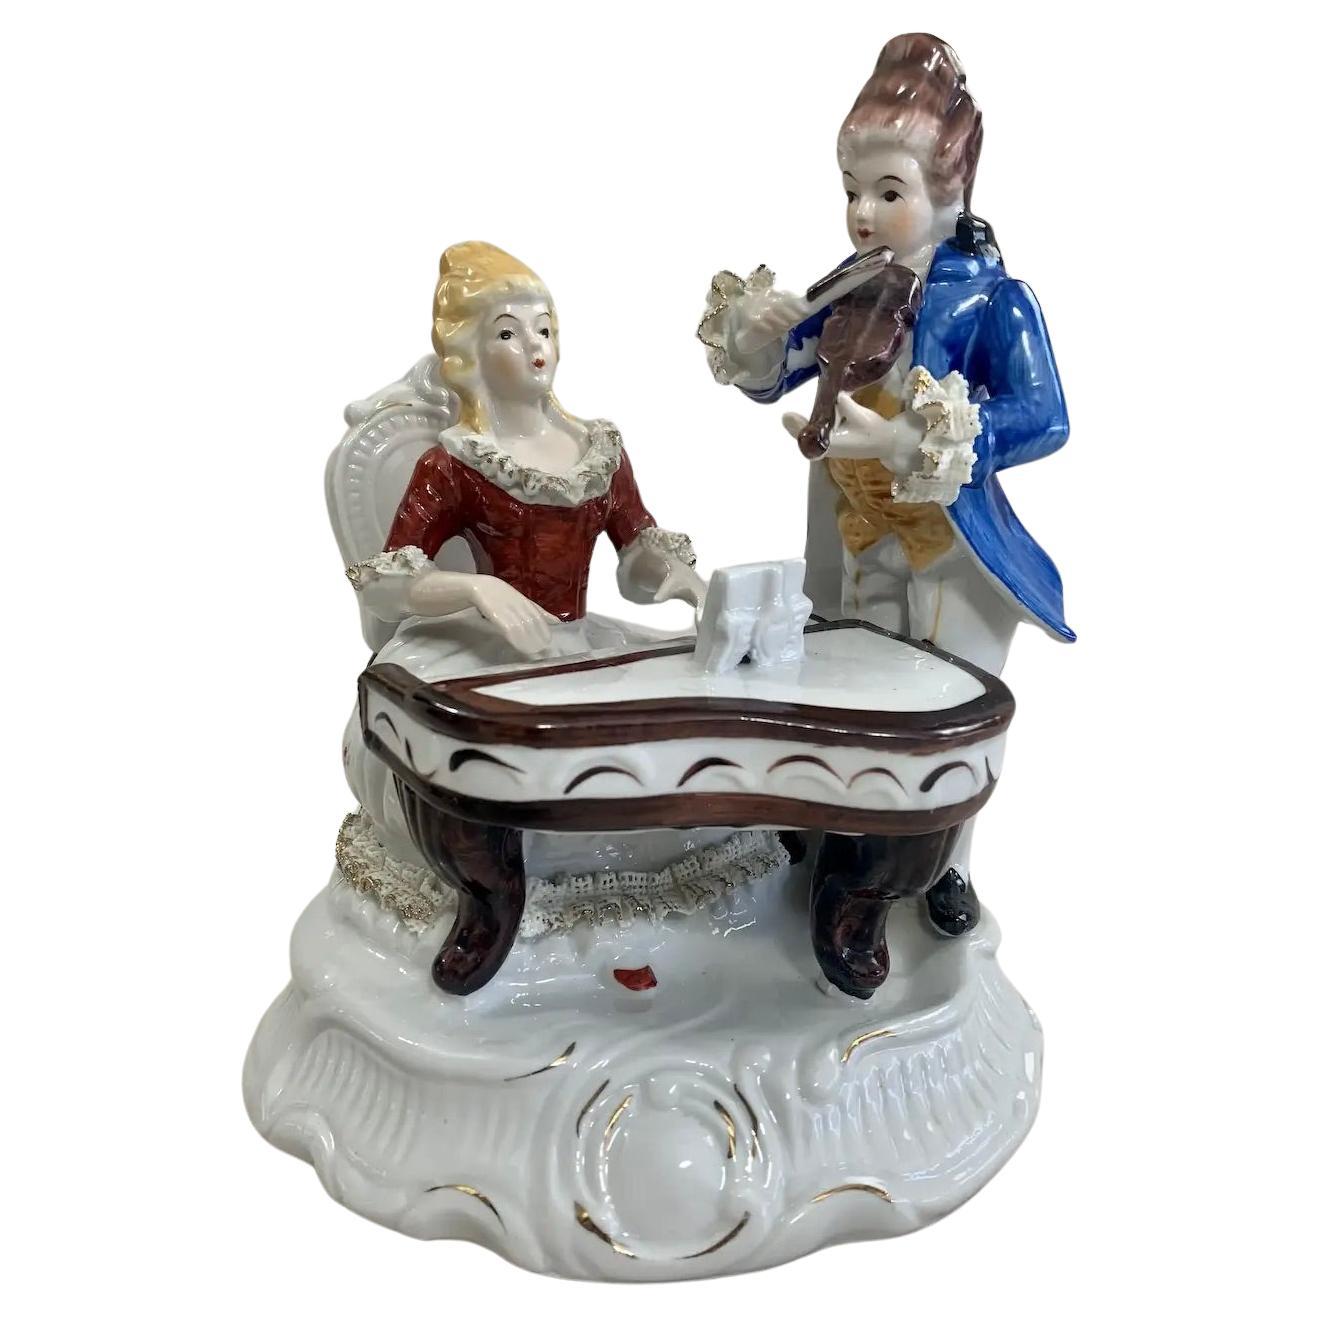 “The Romantic Duet” Porcelain Figurine